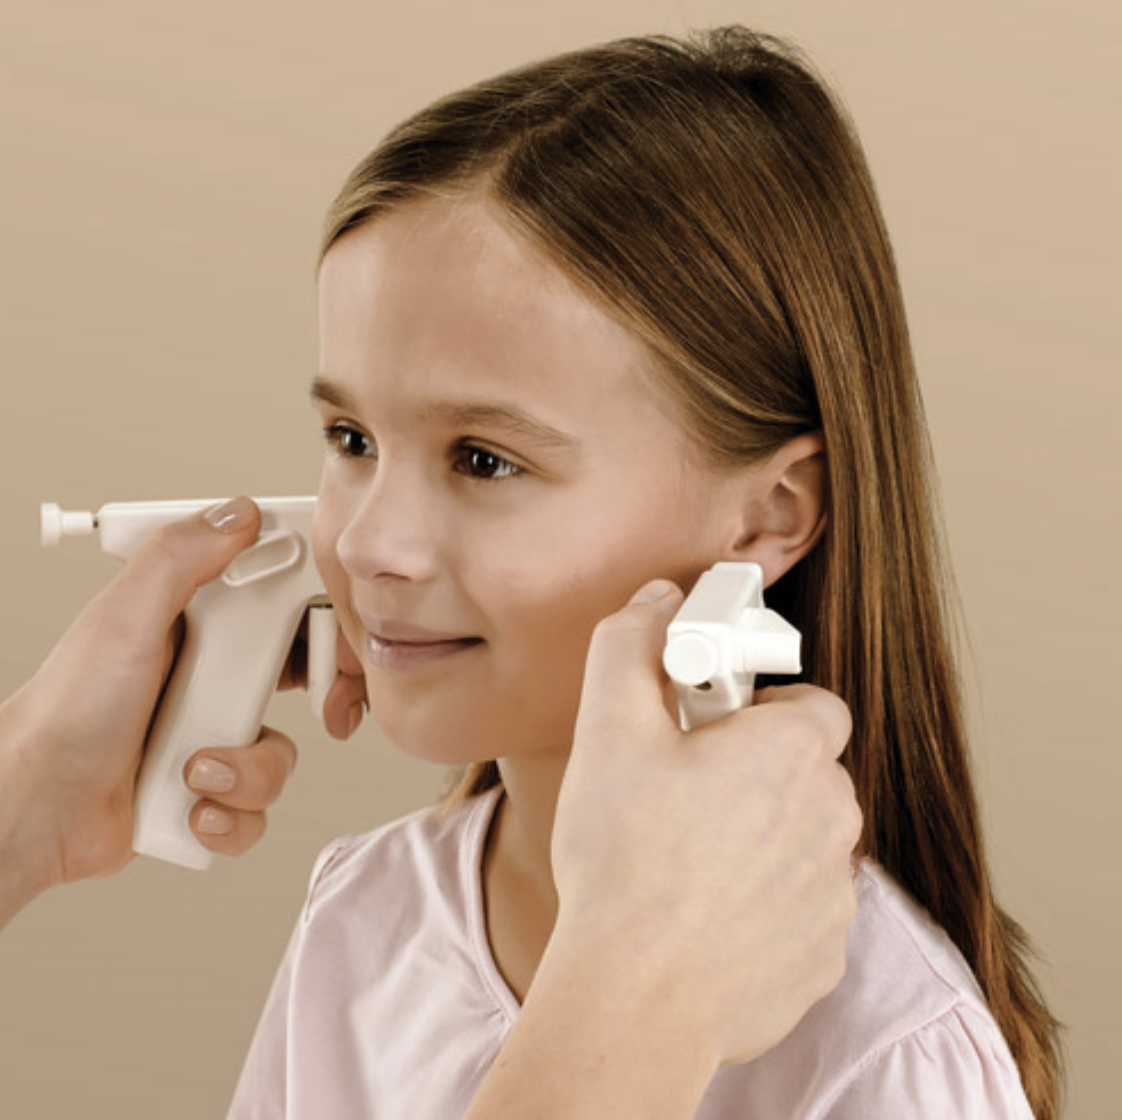 System Blomdahl – sprawdzamy metodę przekłuwania uszu prosto ze Szwecji!